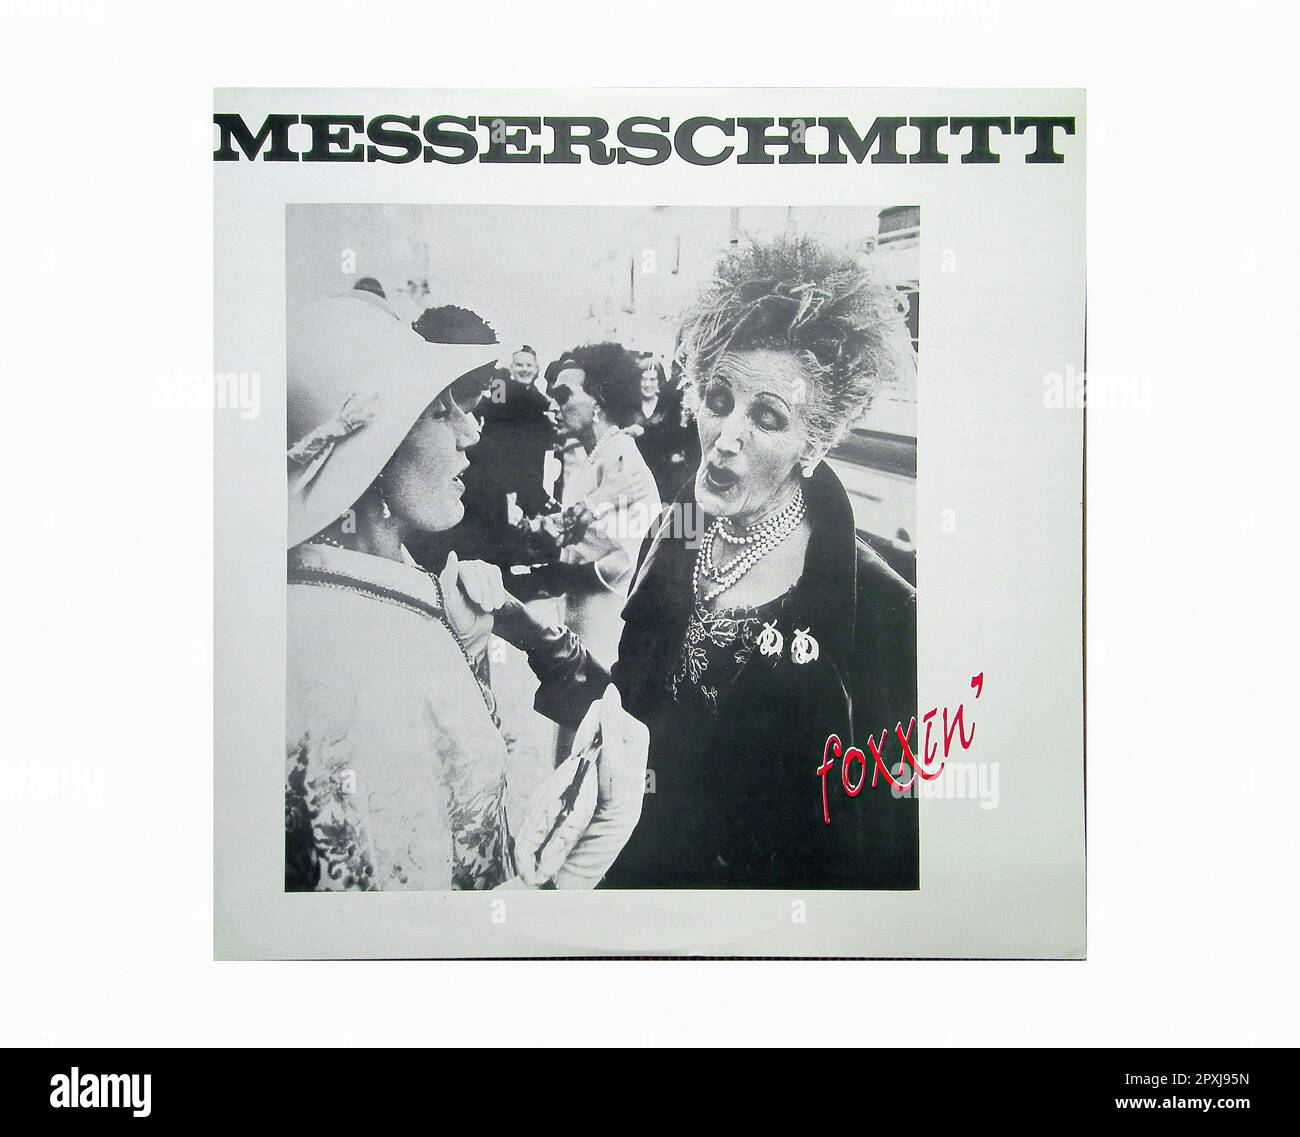 Messerschmitt - Foxxin' [1990] - Vintage Vinyl Record Sleeve Foto Stock